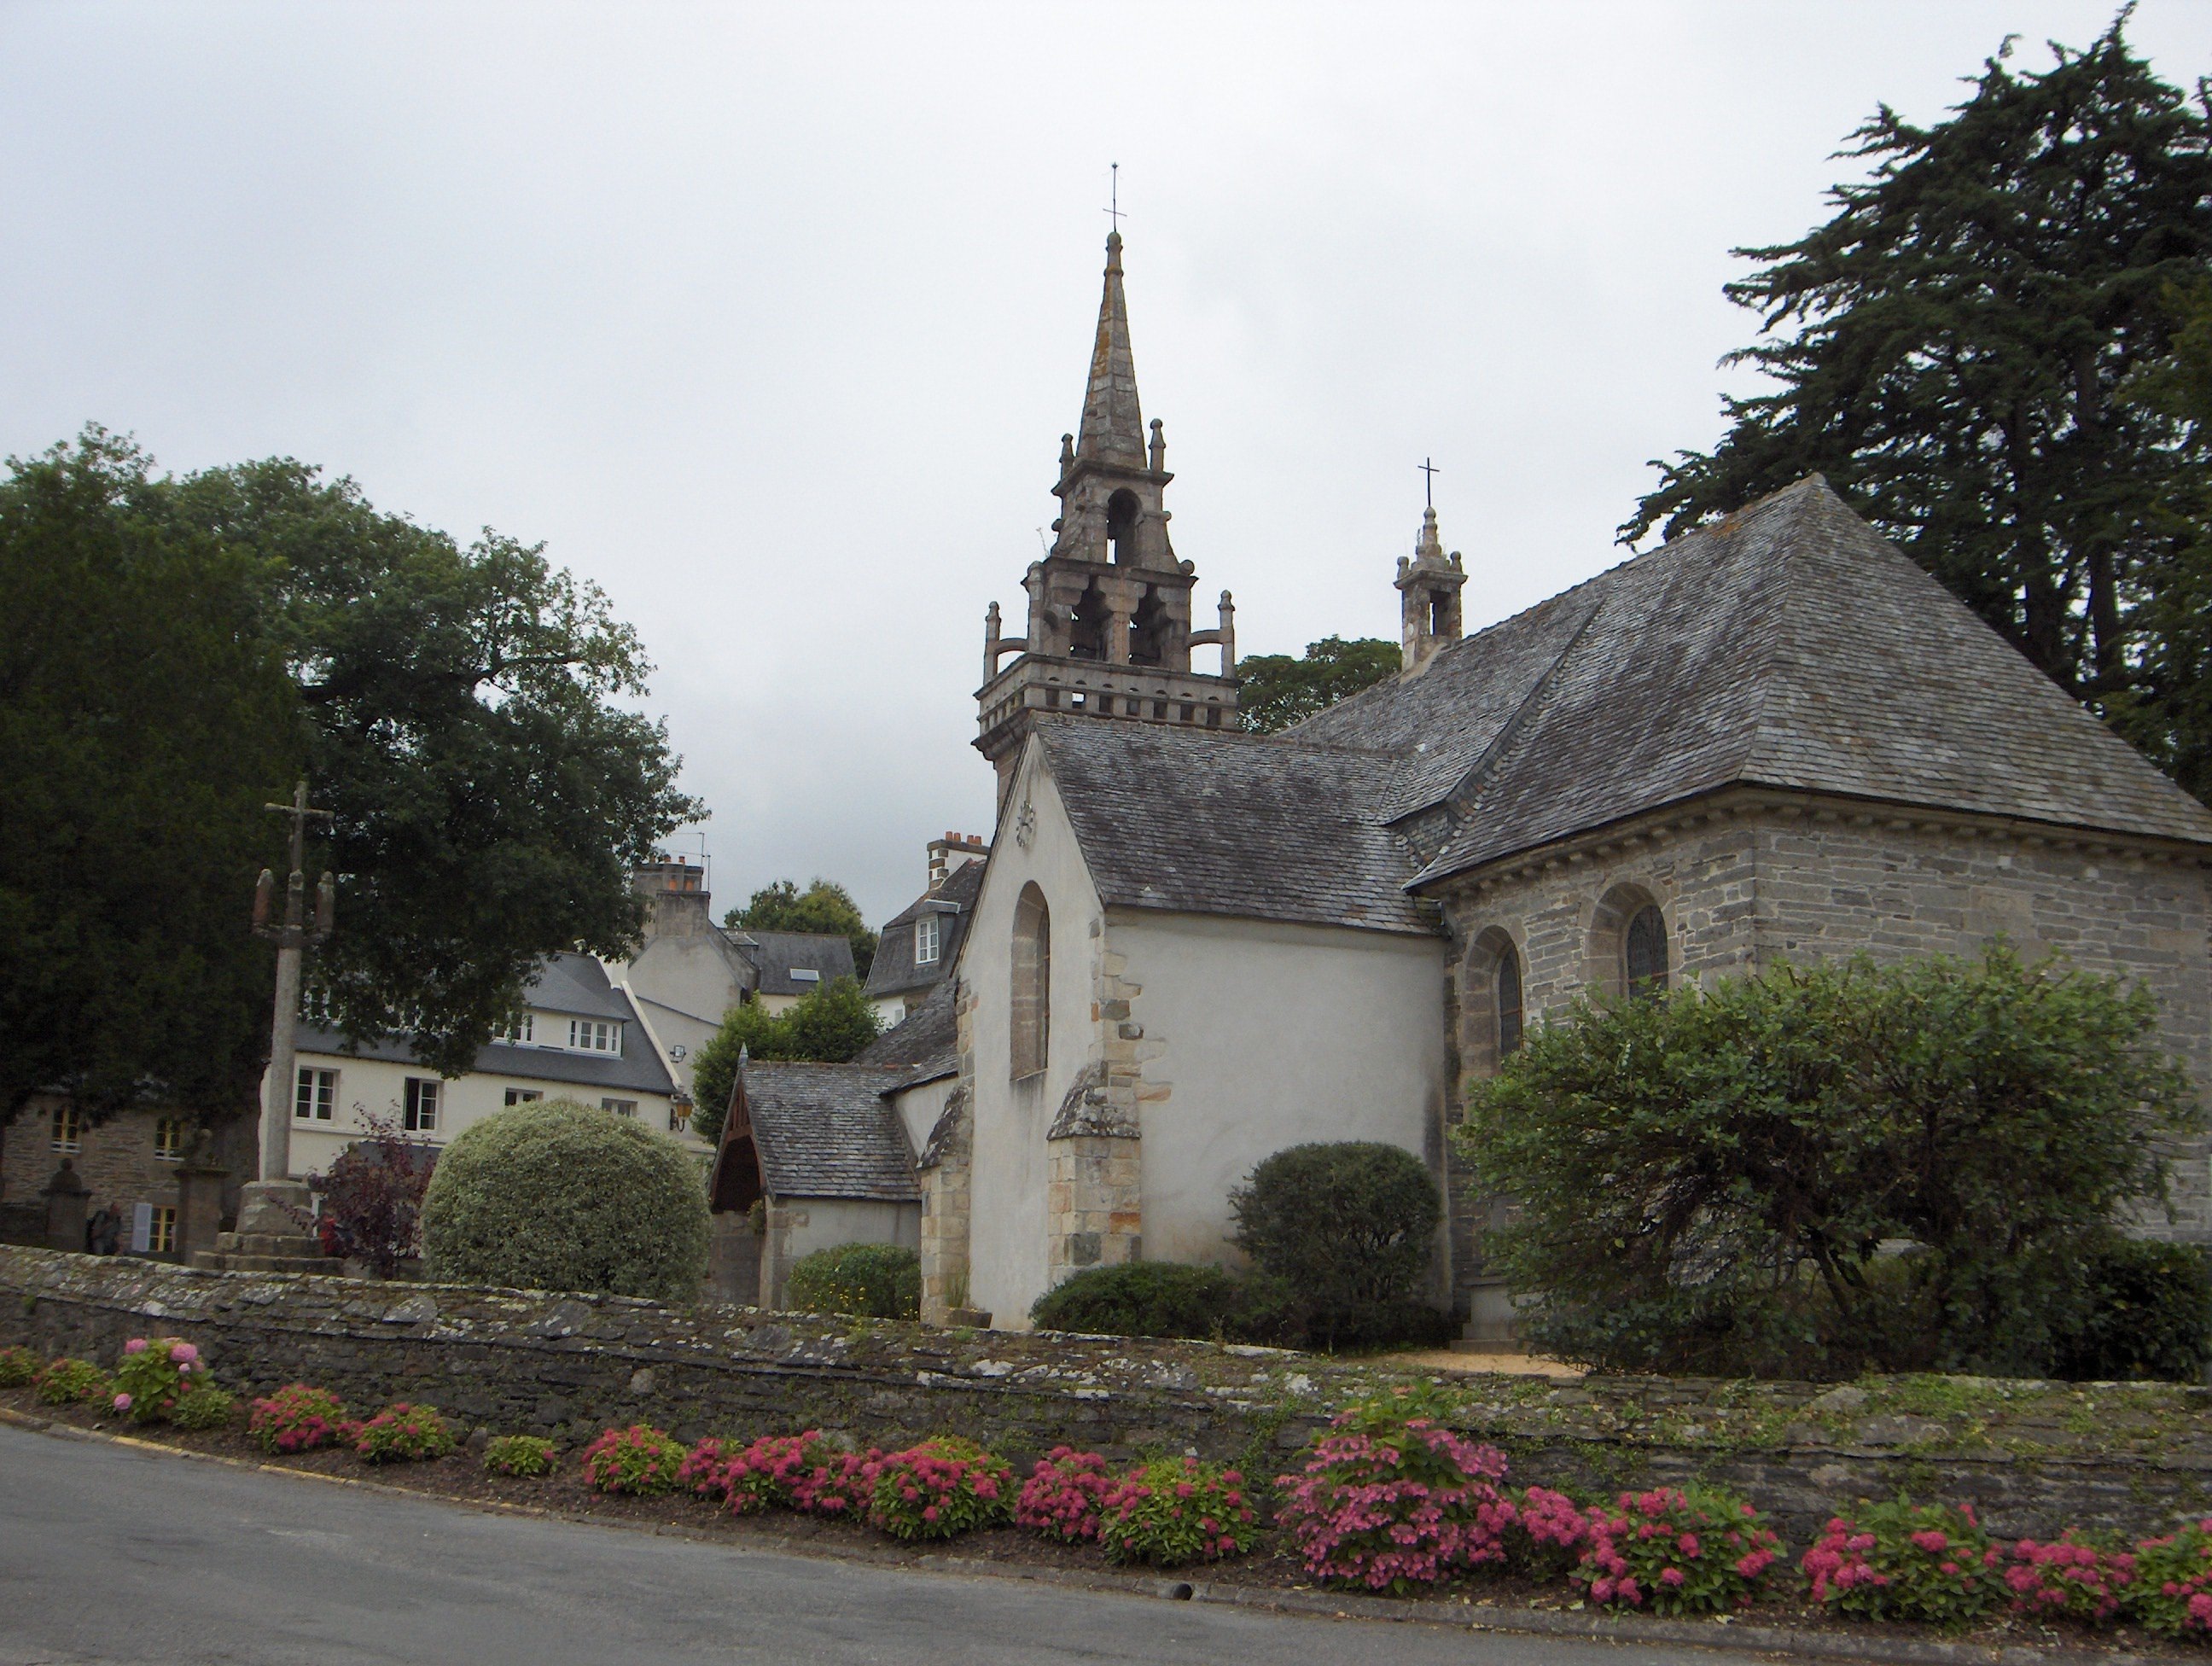 Une petite église gothique avec un clocher ouvrage, un calvaire sur le côté et un muret la séparant de la route.